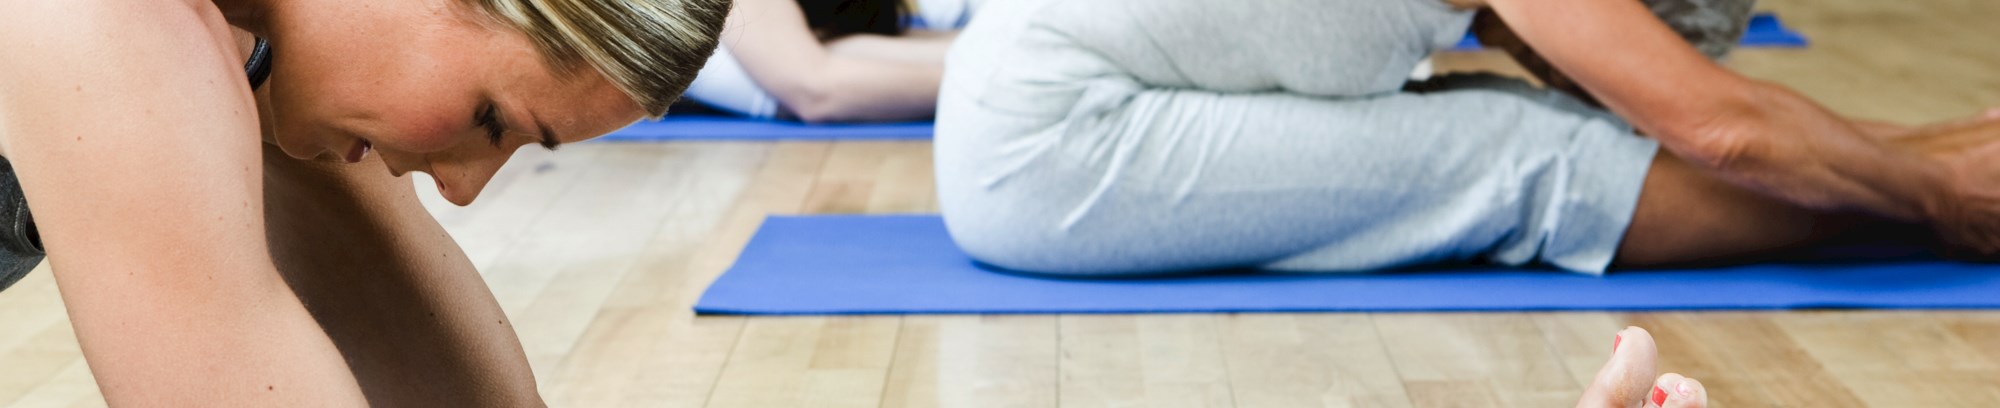 krop bevægelse smidighed styrke træning yoga